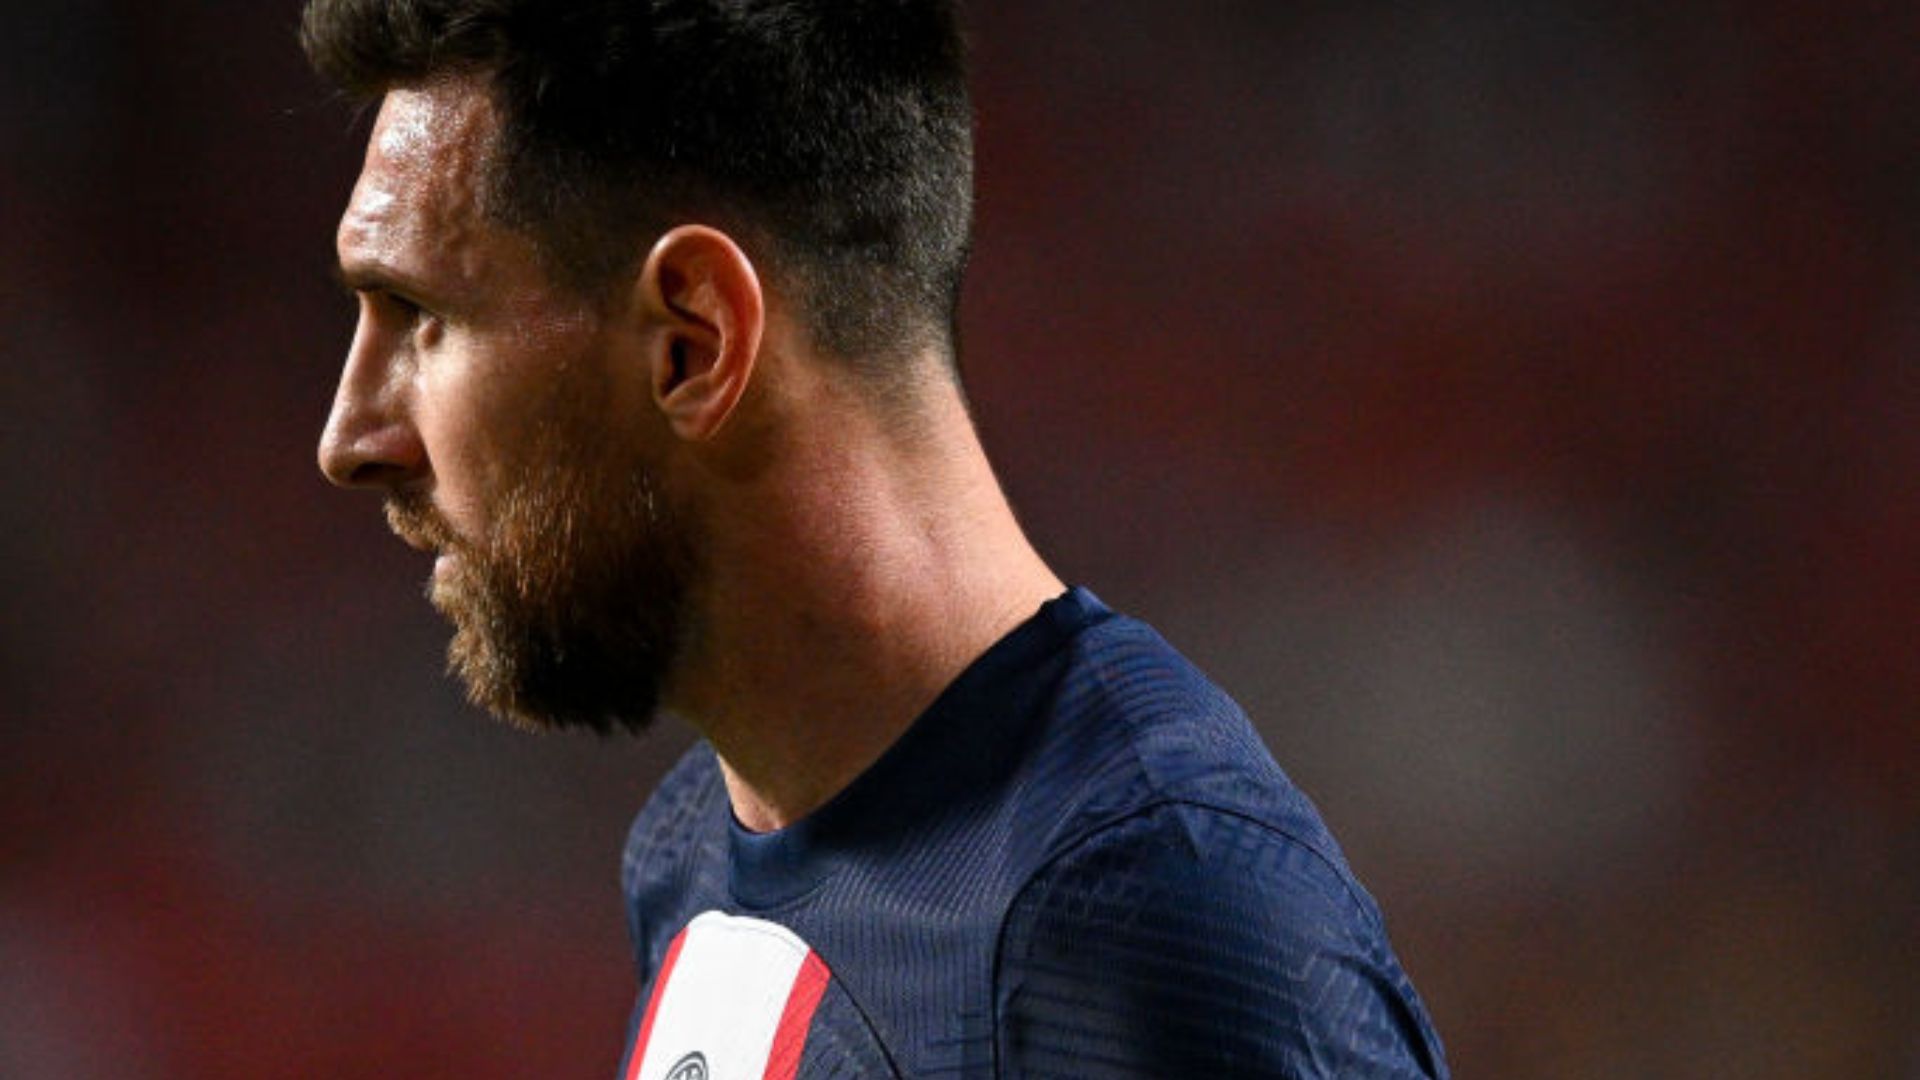 Messi vai deixar o PSG ao fim da temporada, afirma rádio francesa